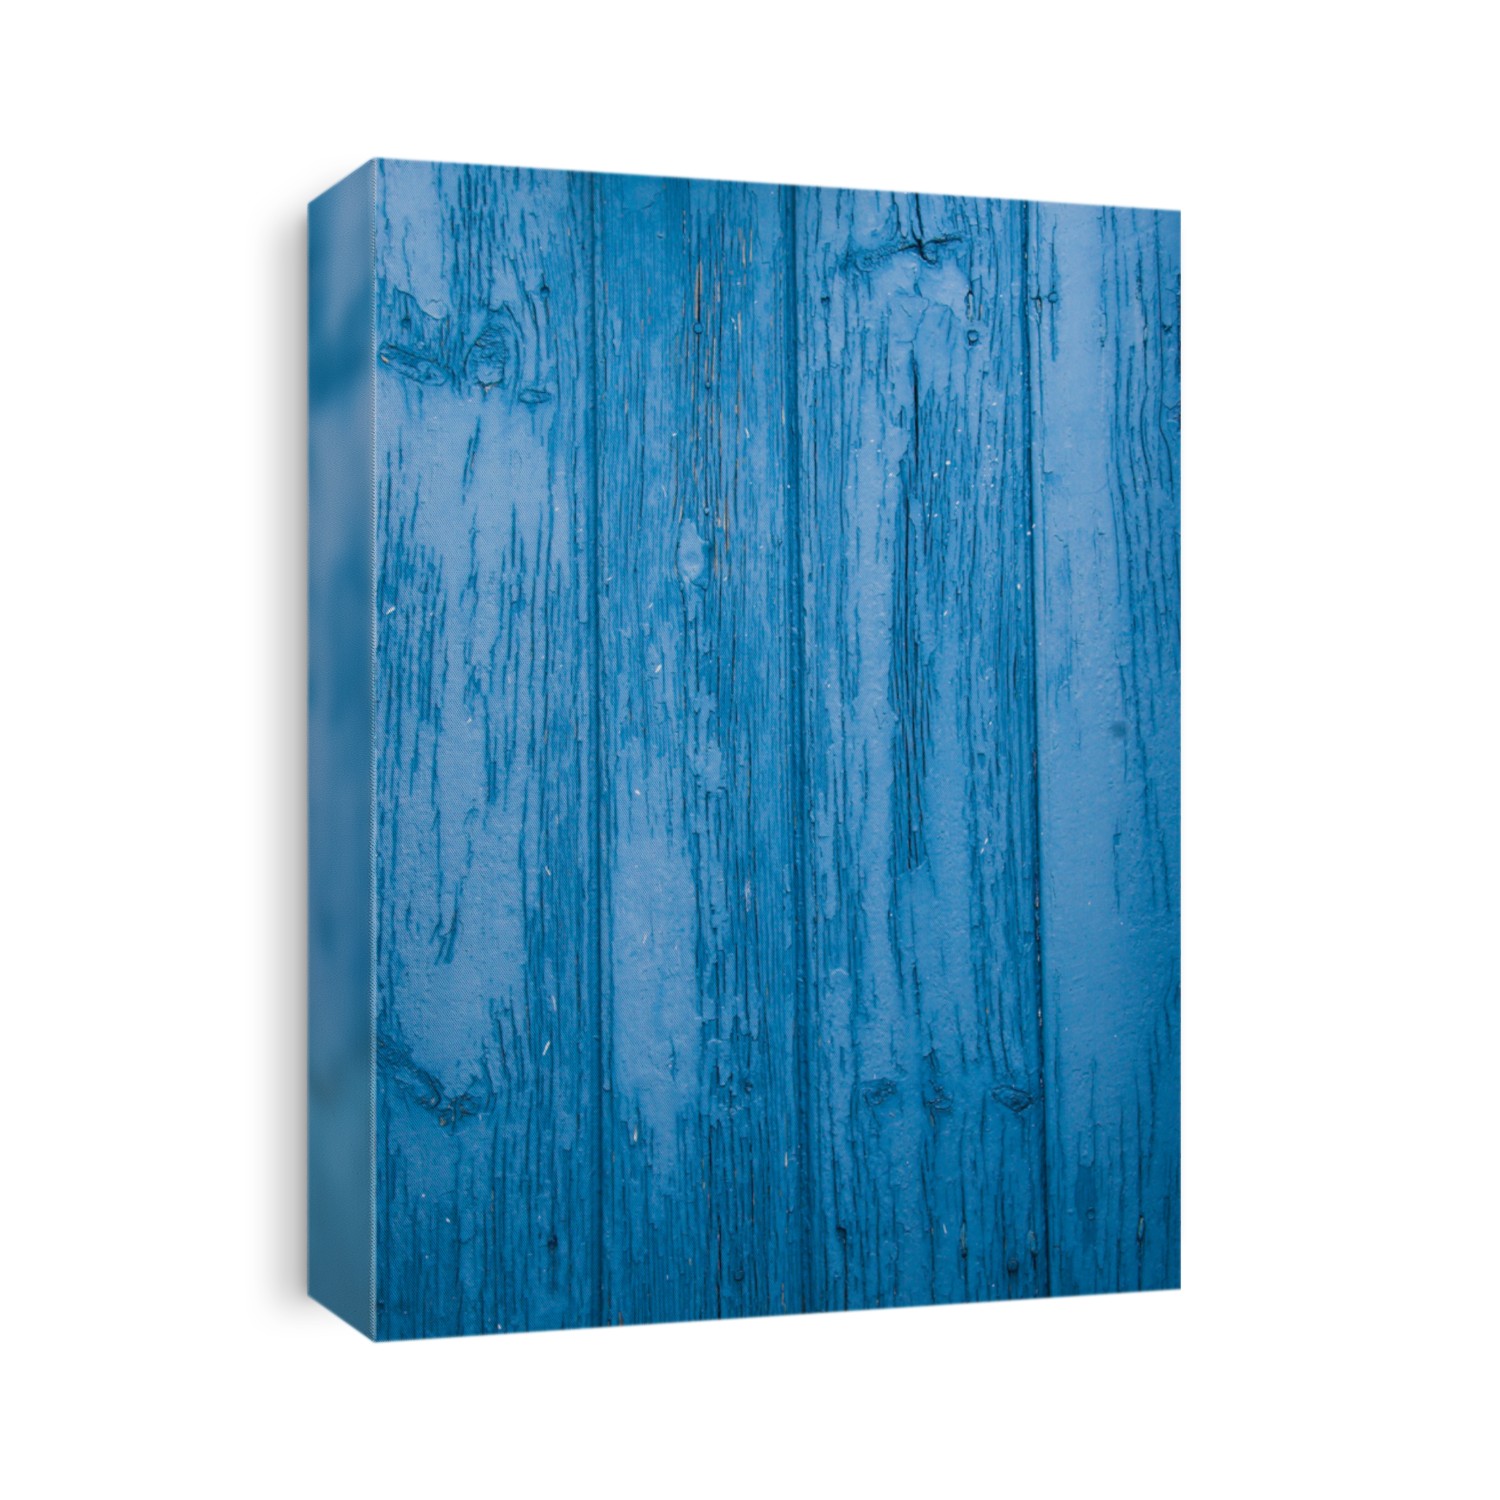 Blue door background